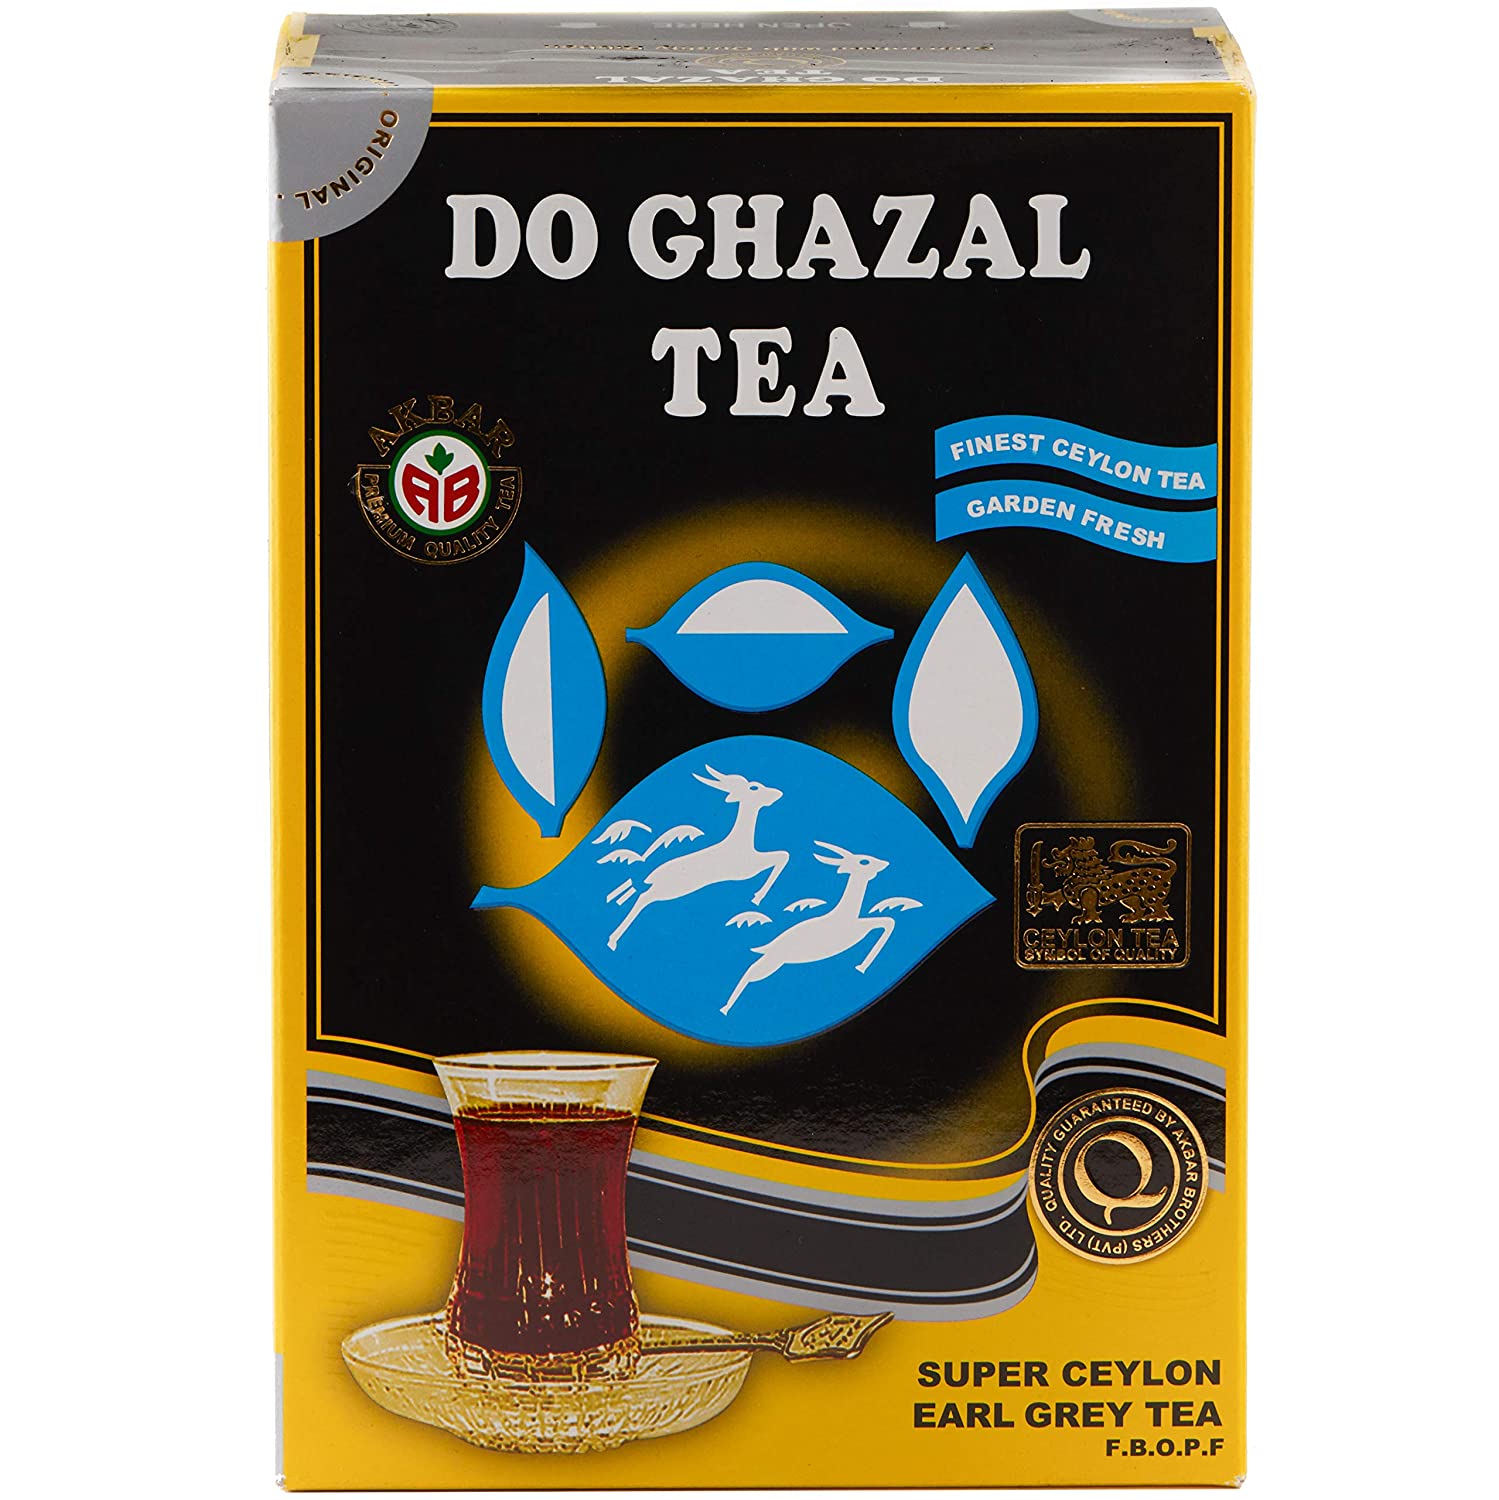 Do Ghazal Super Ceylon Earl Grey Loose Tea 16 Ounce (454g) - Mideast Grocers